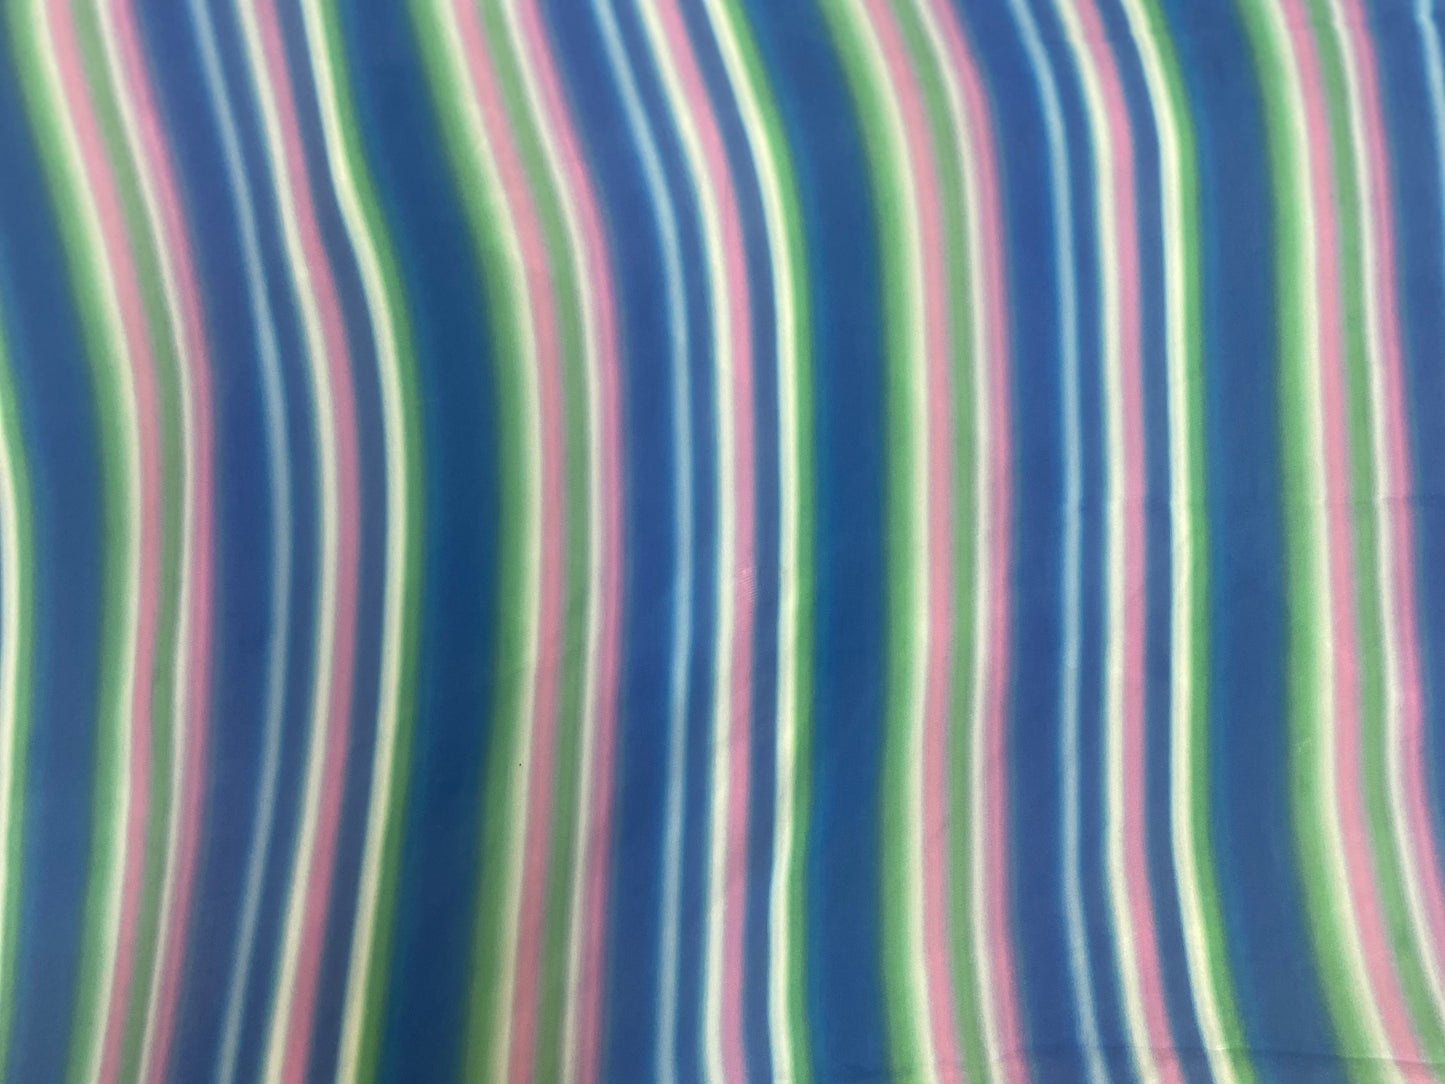 Stripe Rayon Print - Blue, Pink, Green & White